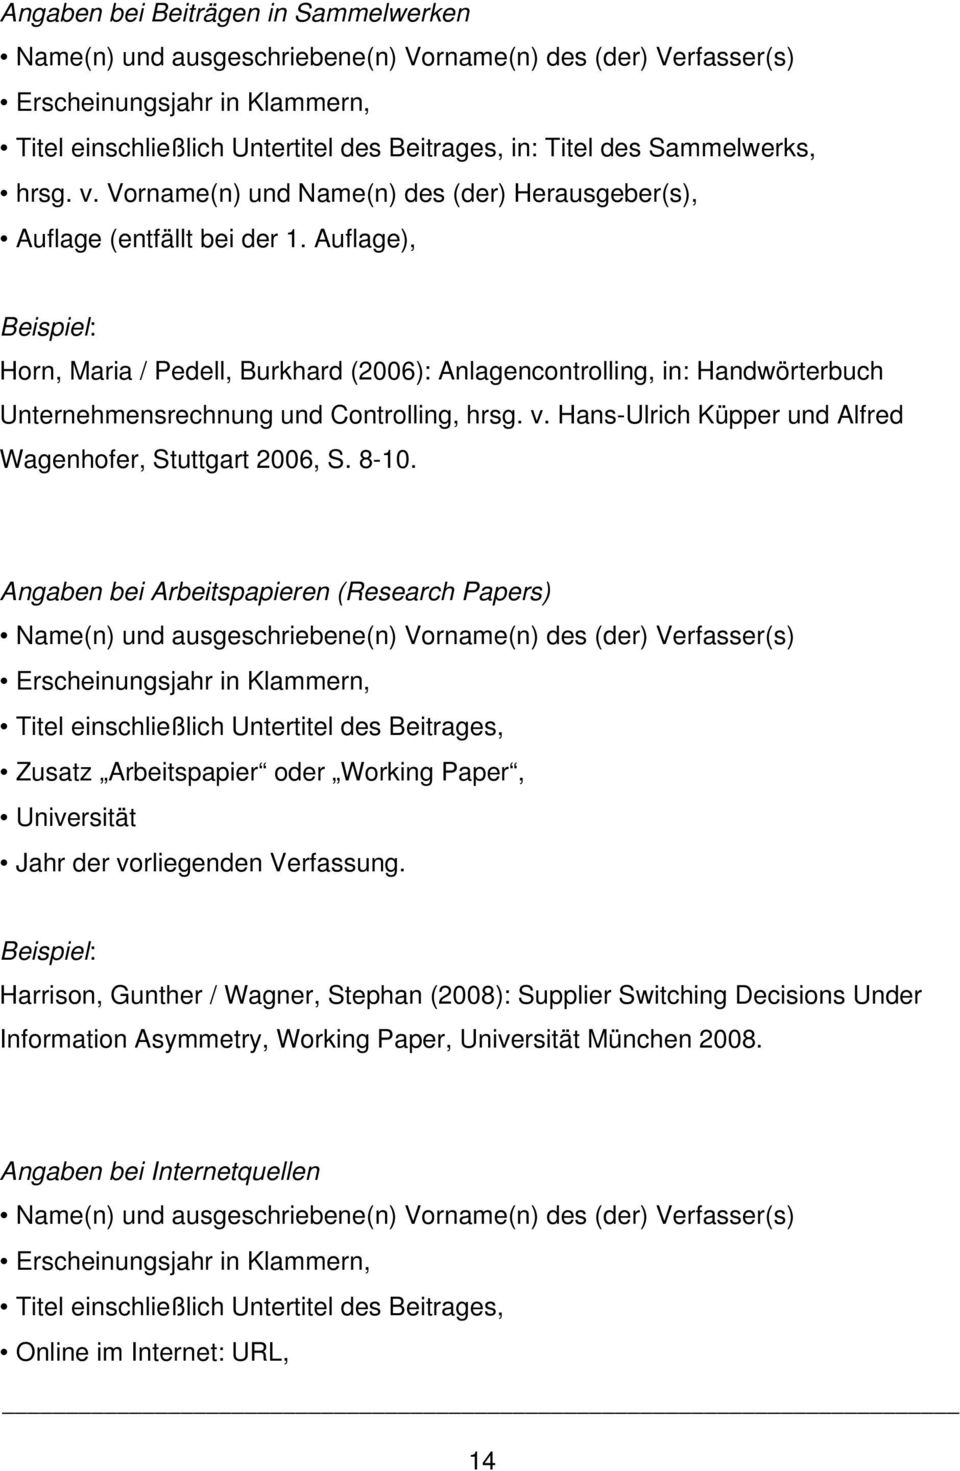 Auflage), Beispiel: Horn, Maria / Pedell, Burkhard (2006): Anlagencontrolling, in: Handwörterbuch Unternehmensrechnung und Controlling, hrsg. v.